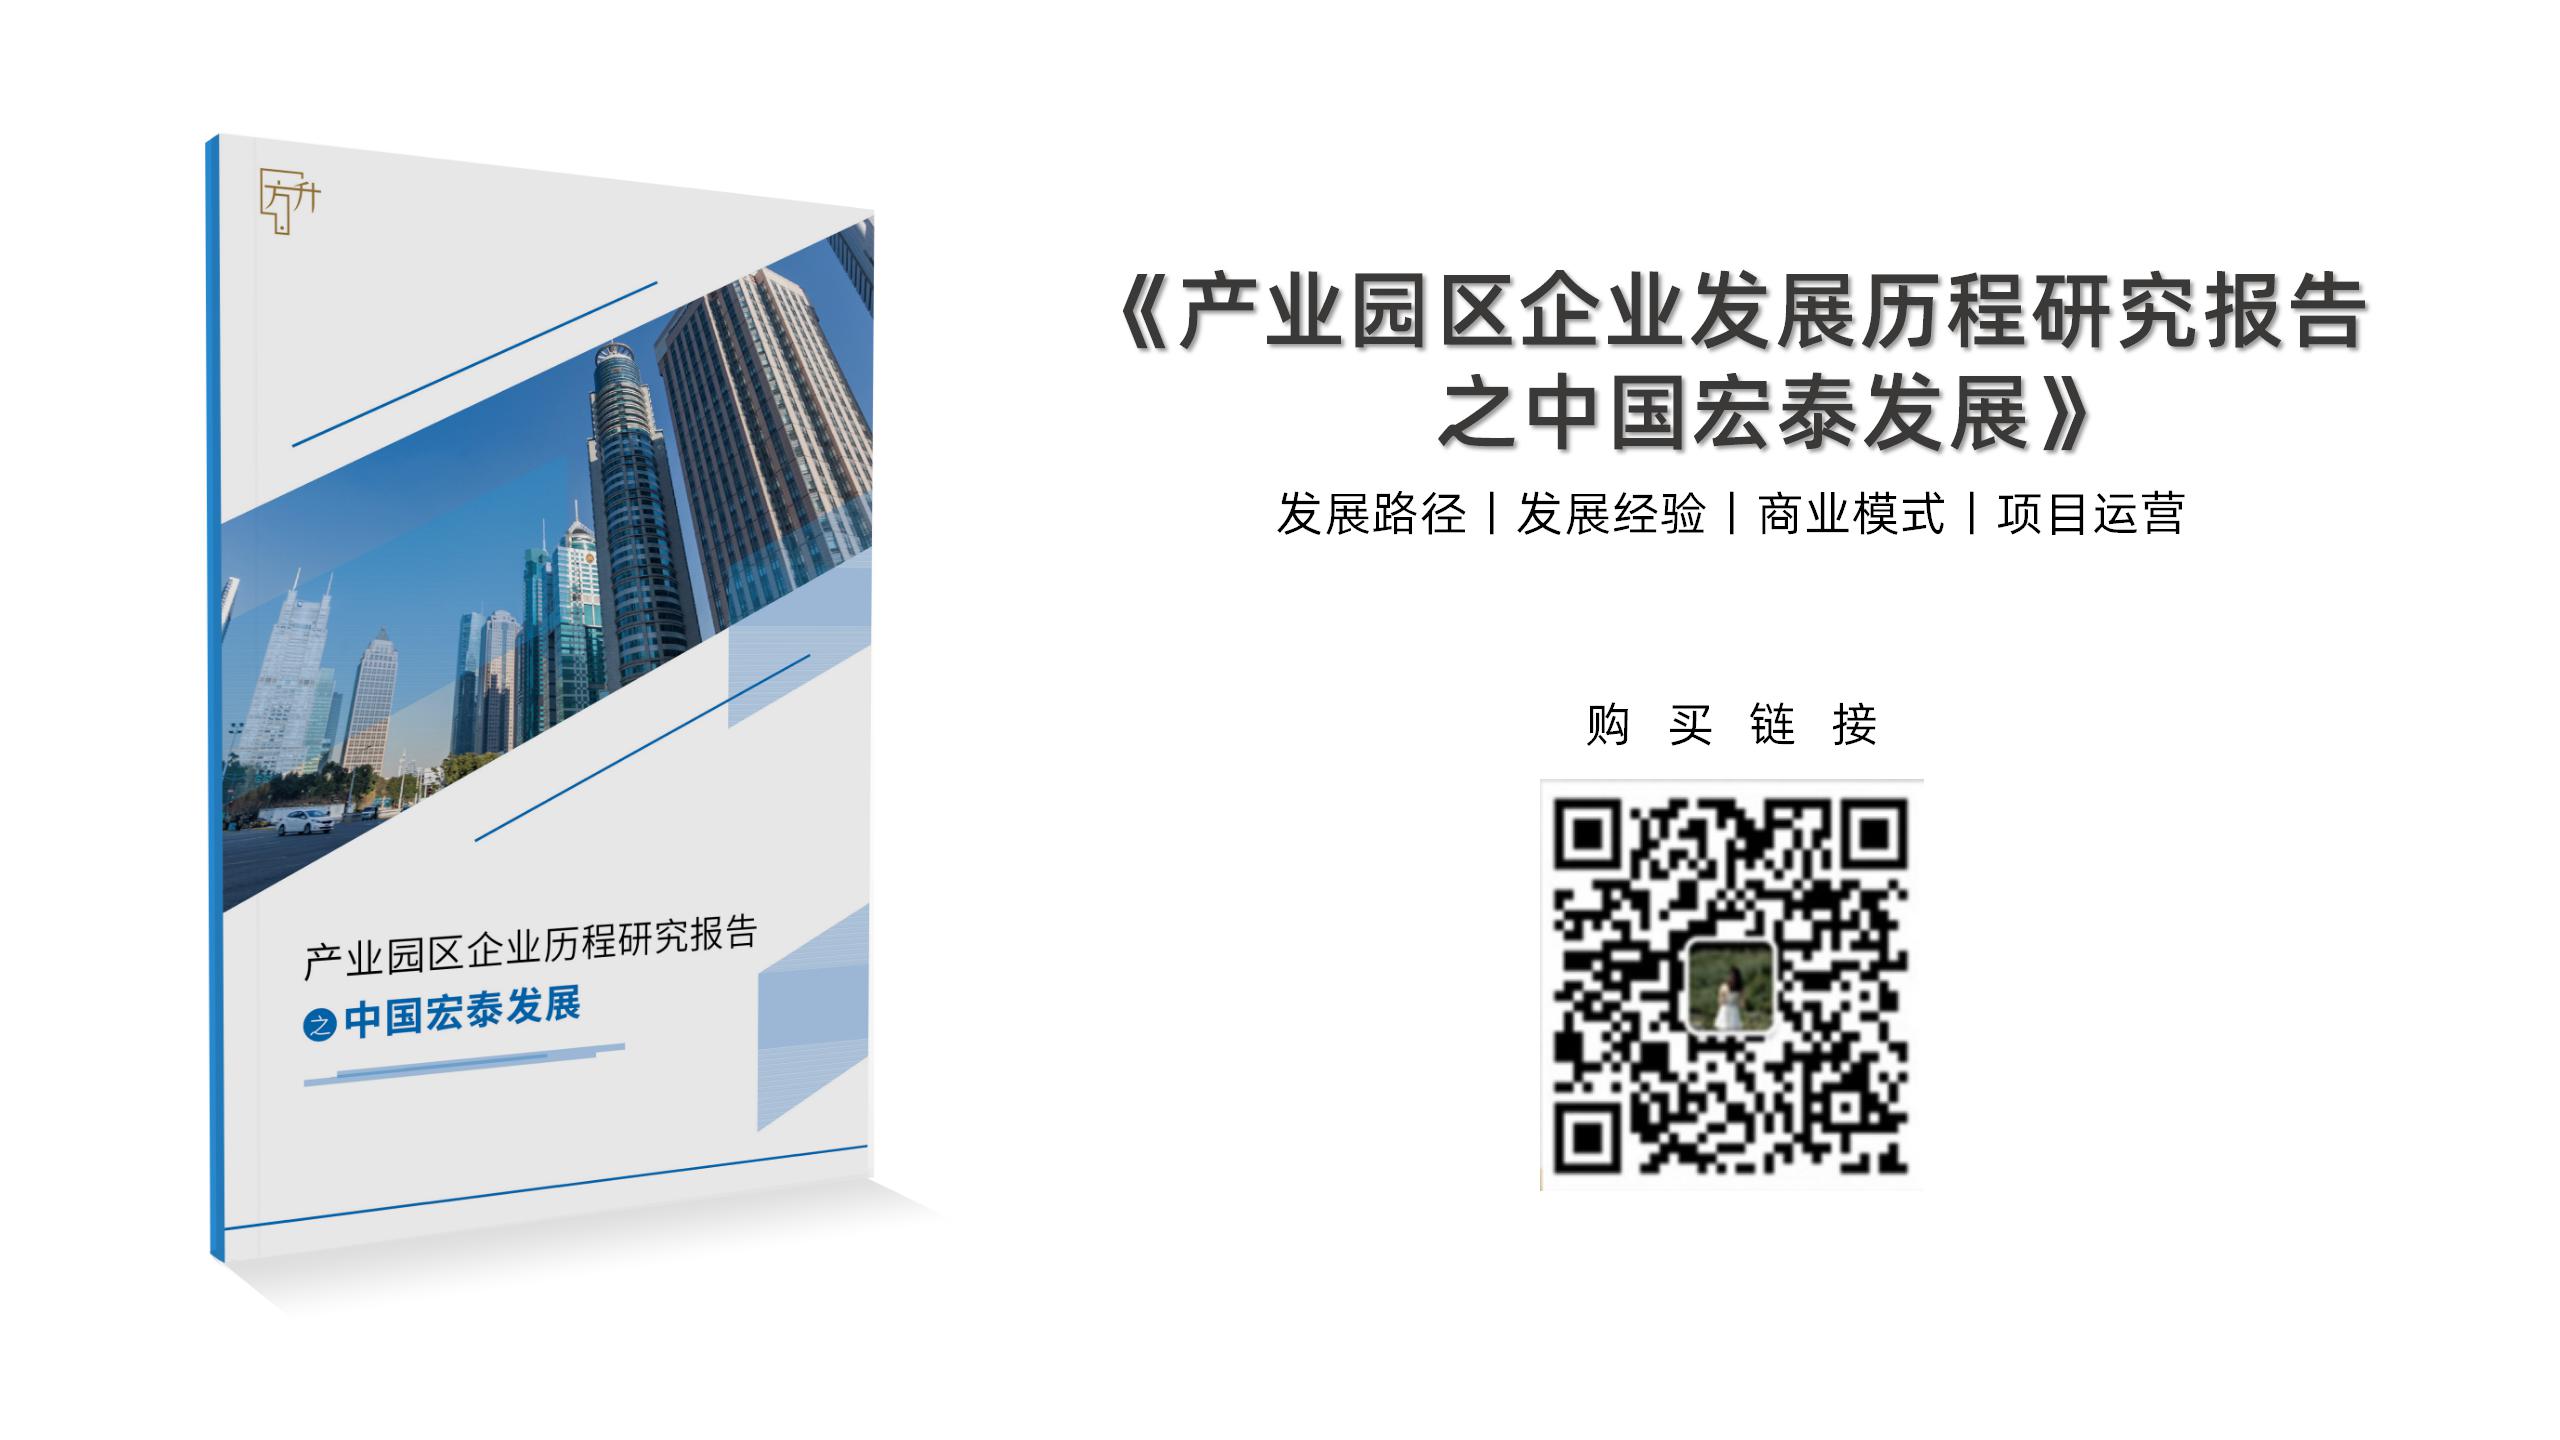 中国产业园区发展历程研究报告-中国宏泰发展 -中国产业园区大会